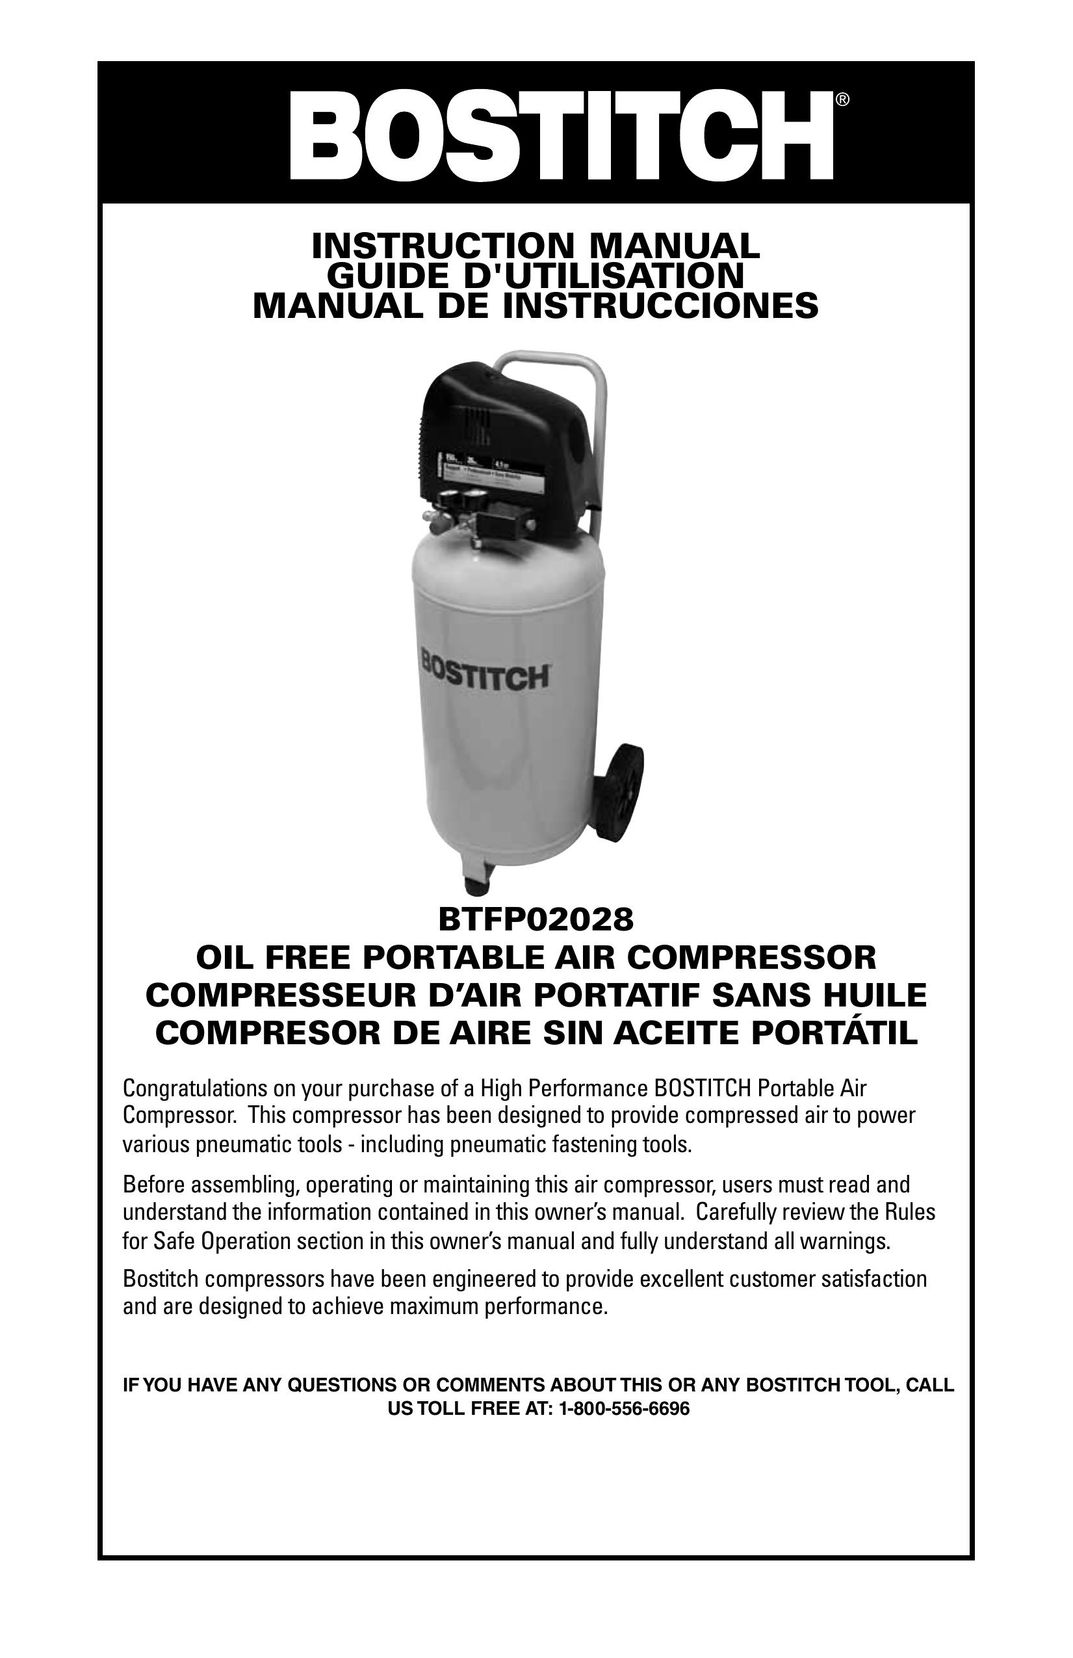 Bostitch BTFP02028 Air Compressor User Manual